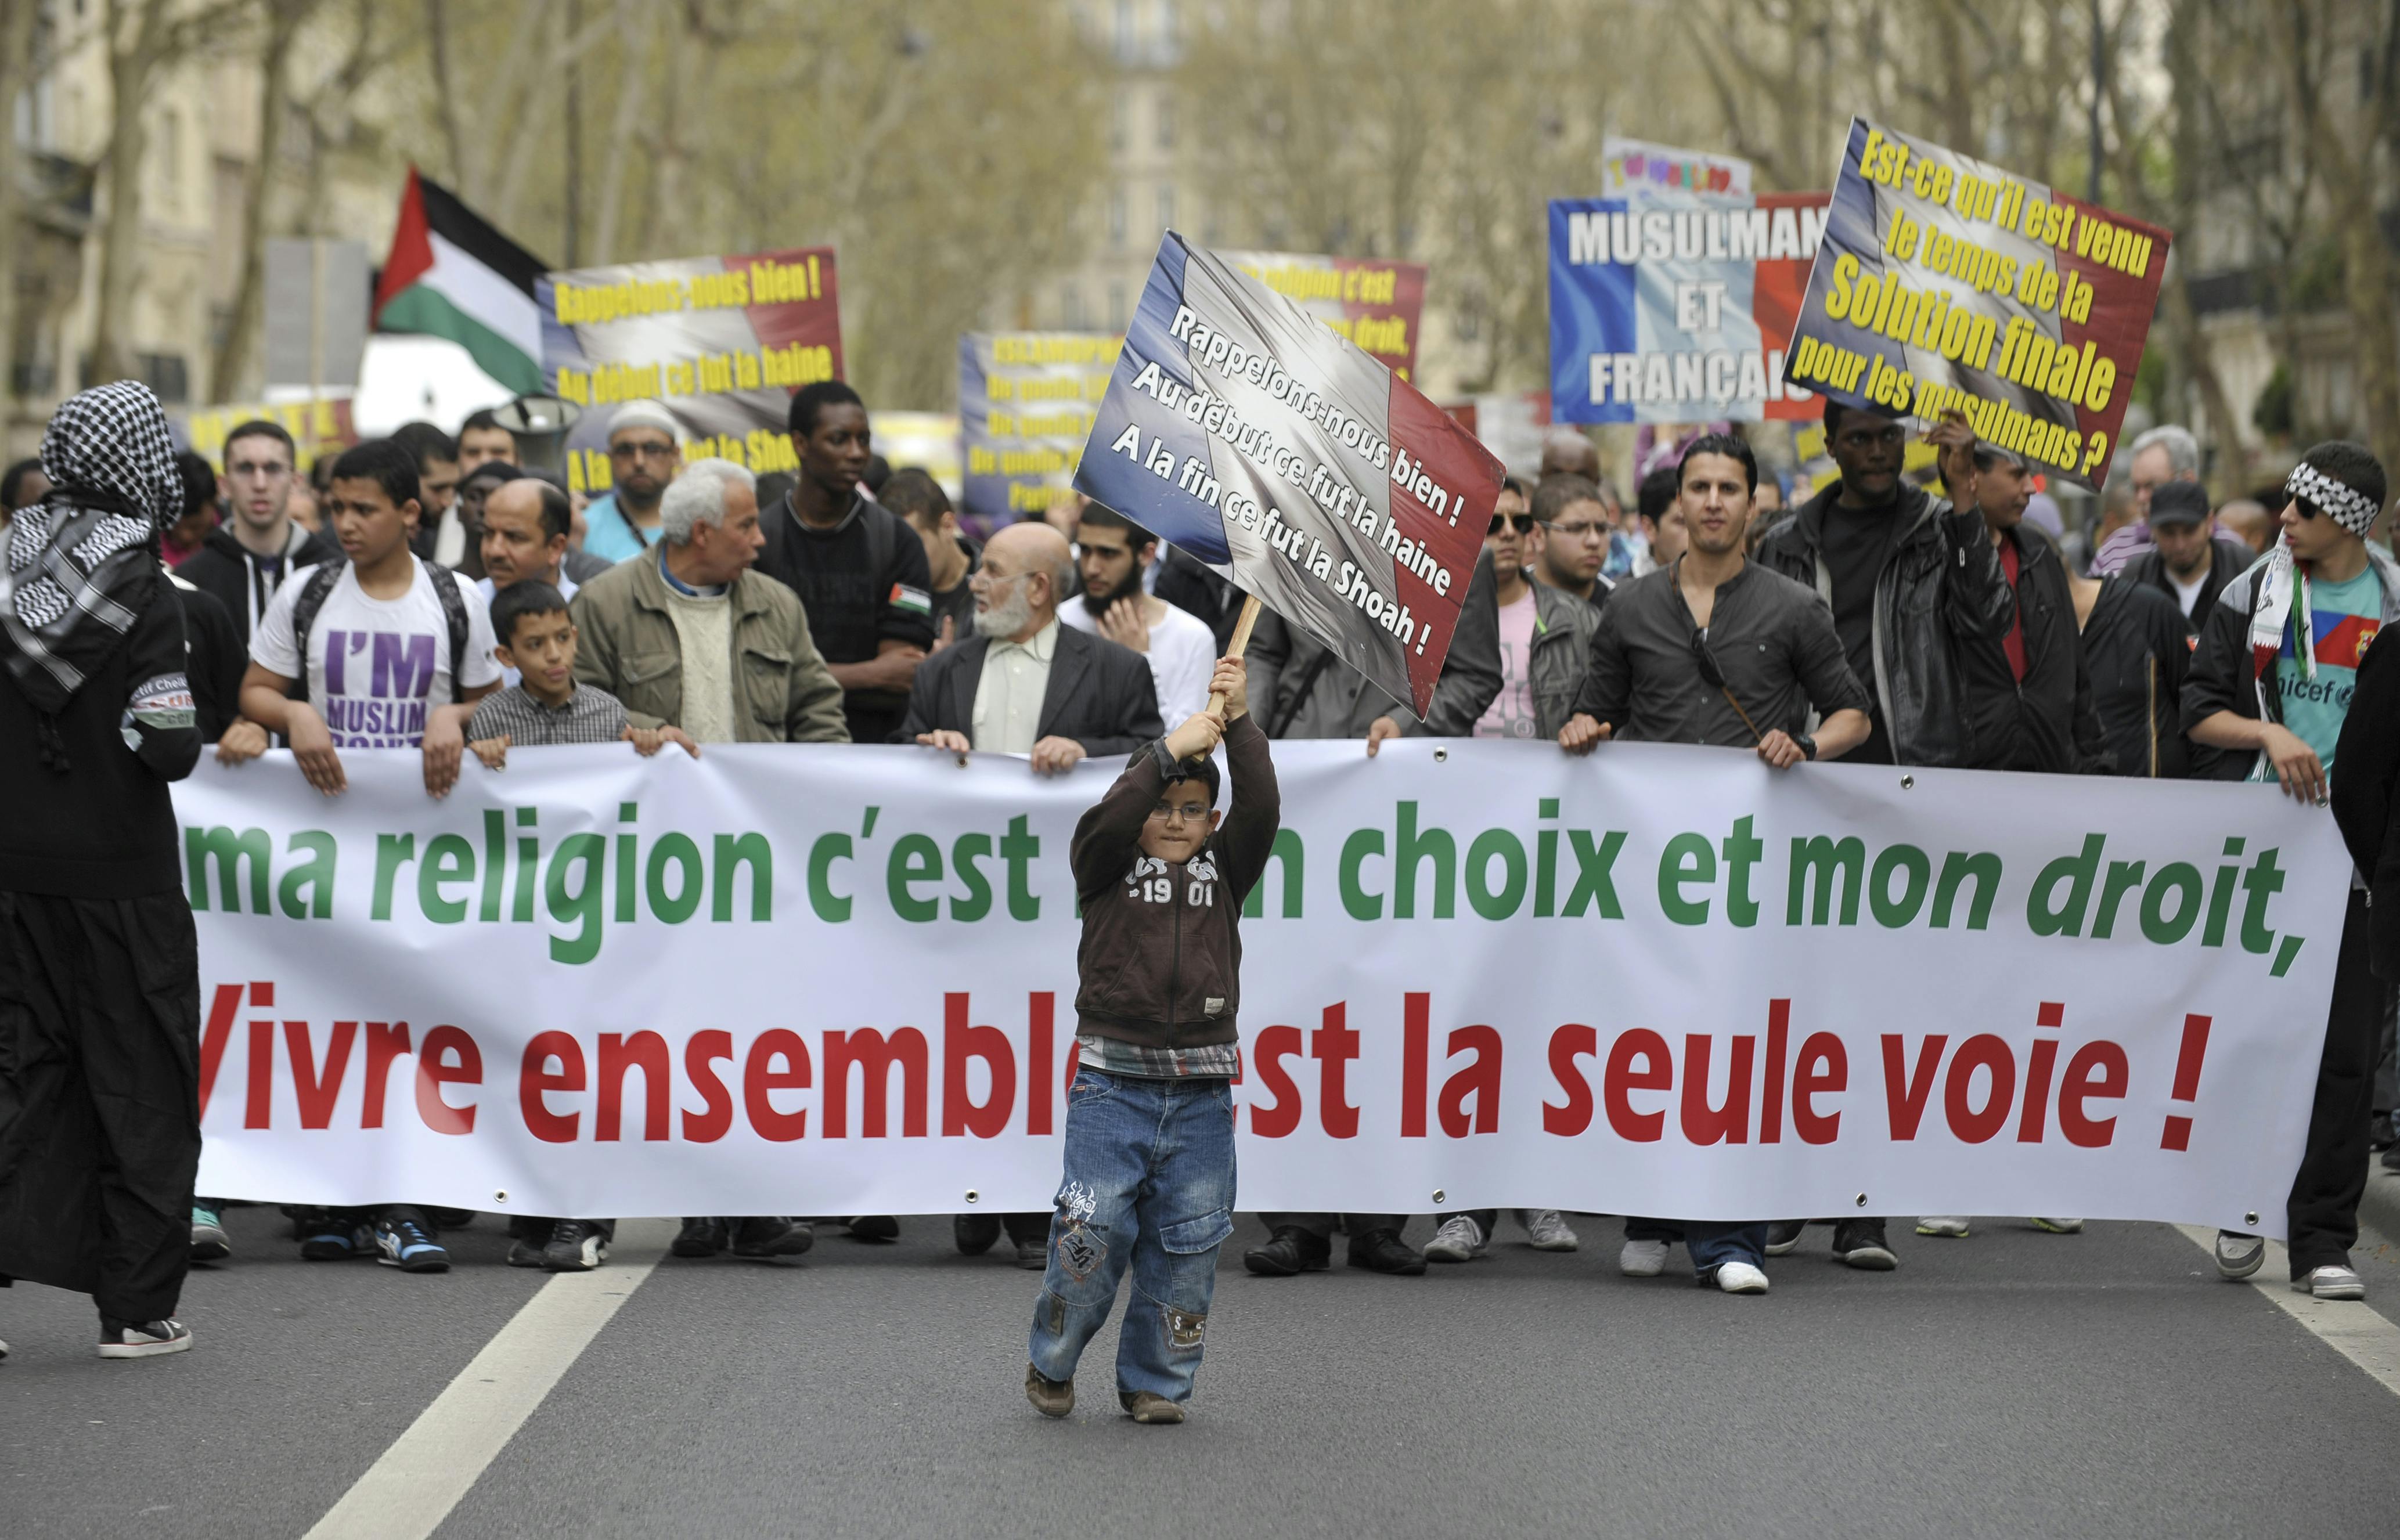 تظاهرات جمعی از مسلمانان در پاریس (۲ آوریل ۲۰۱۱). بر روی بنر آنها آمده است: :دین من انتخاب من و حق من است؛ همزیستی تنها راه است»